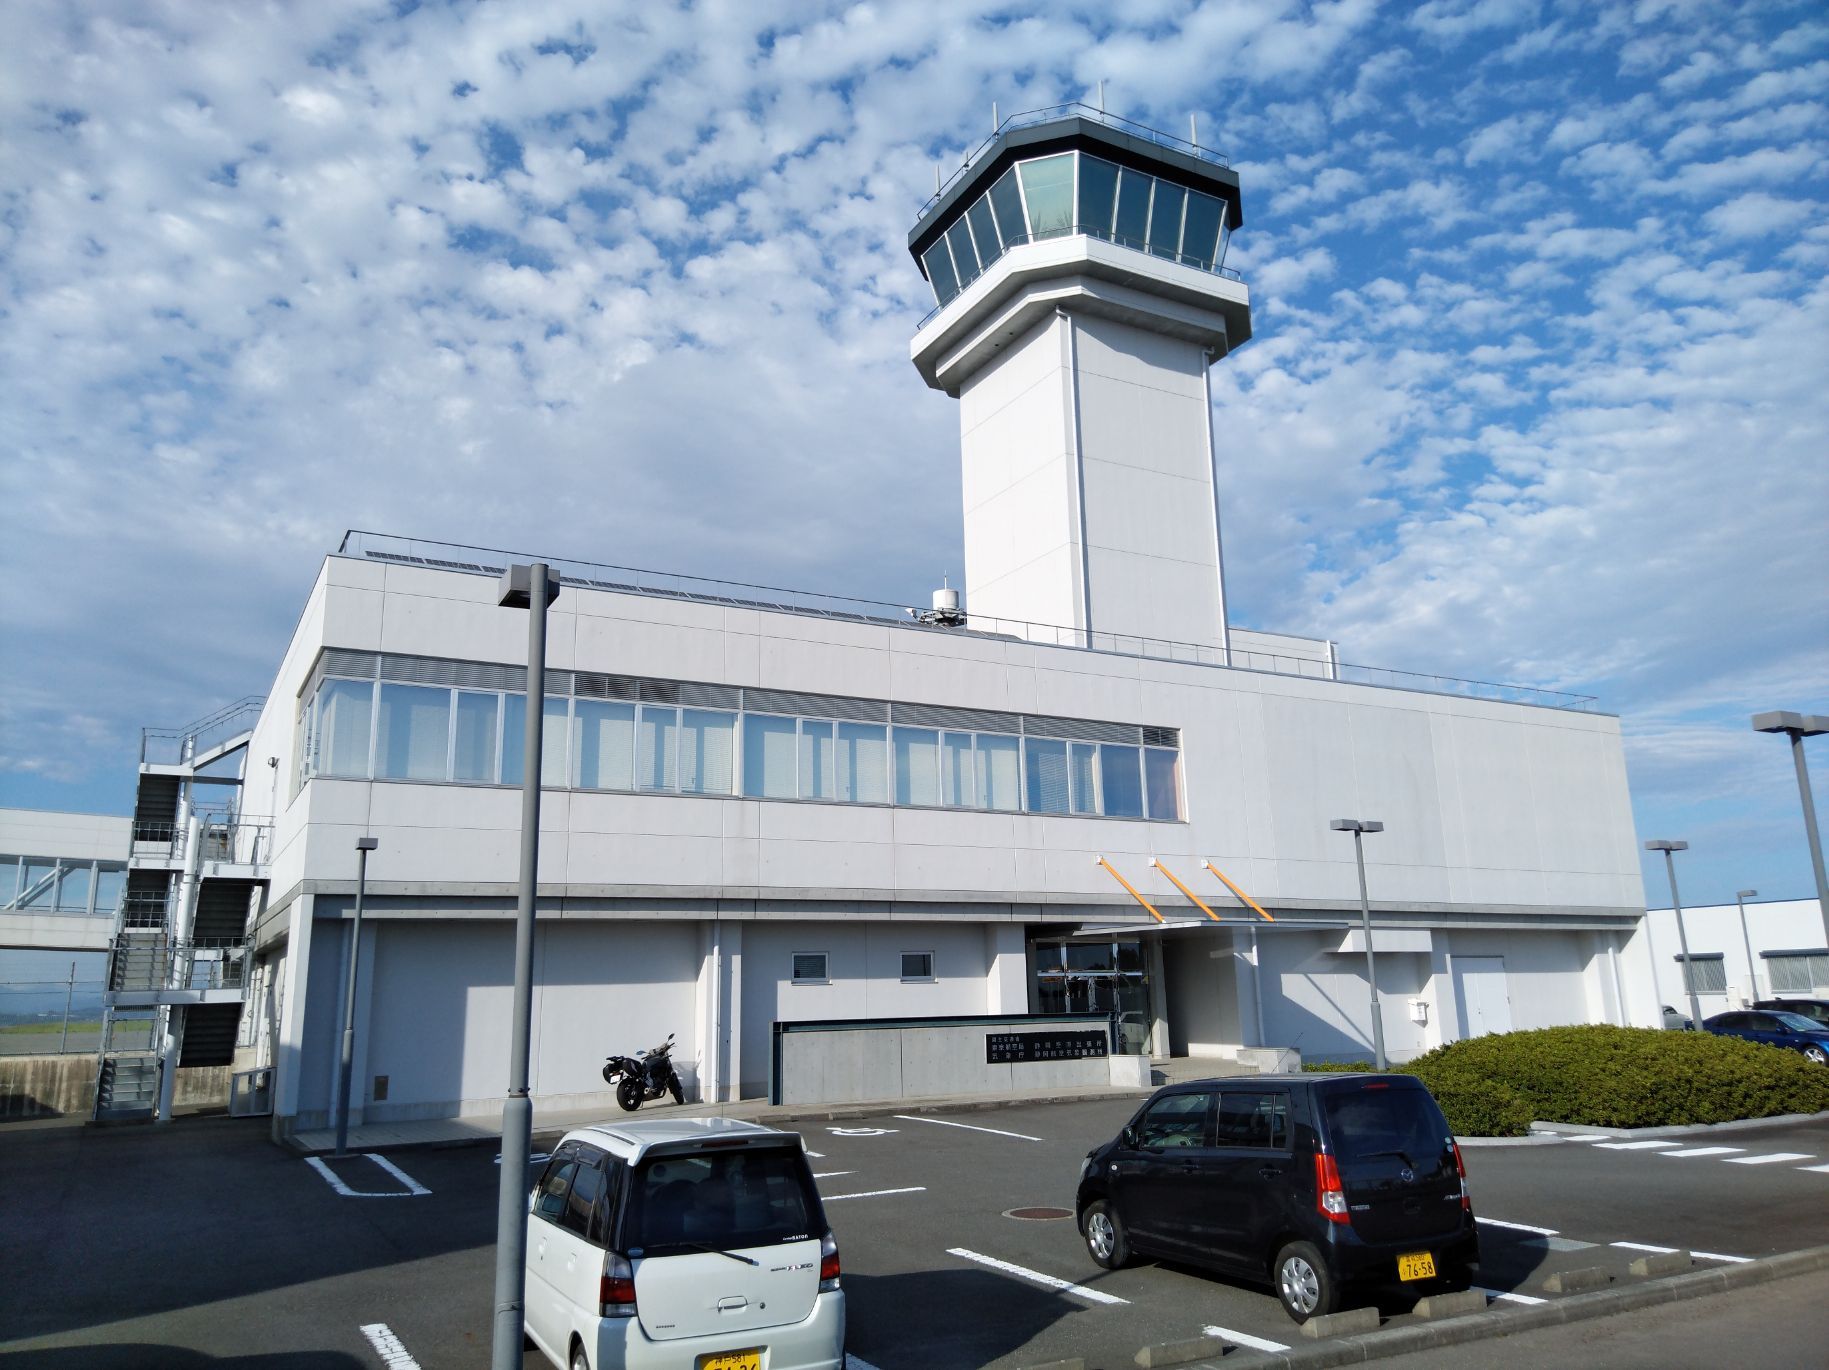 漫步日本，发现小而美的静冈机场。 静冈机场，全称富士山静冈机场，2009年投入使用，是日本国内离富士